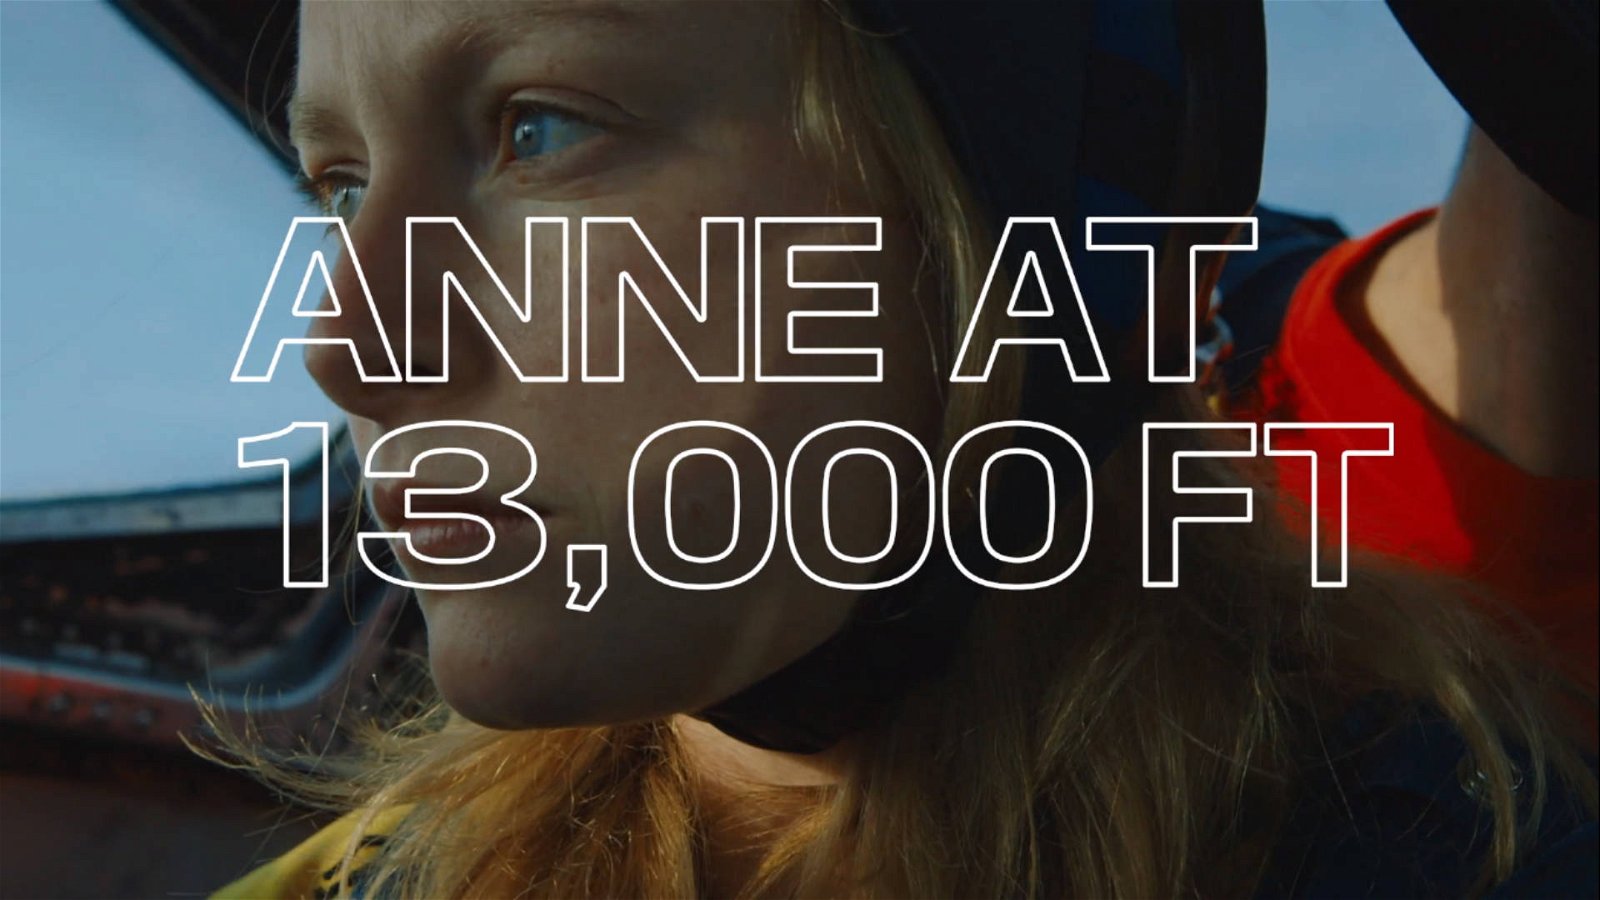 Immagine di Anne at 13.000 Ft: il trailer ufficiale